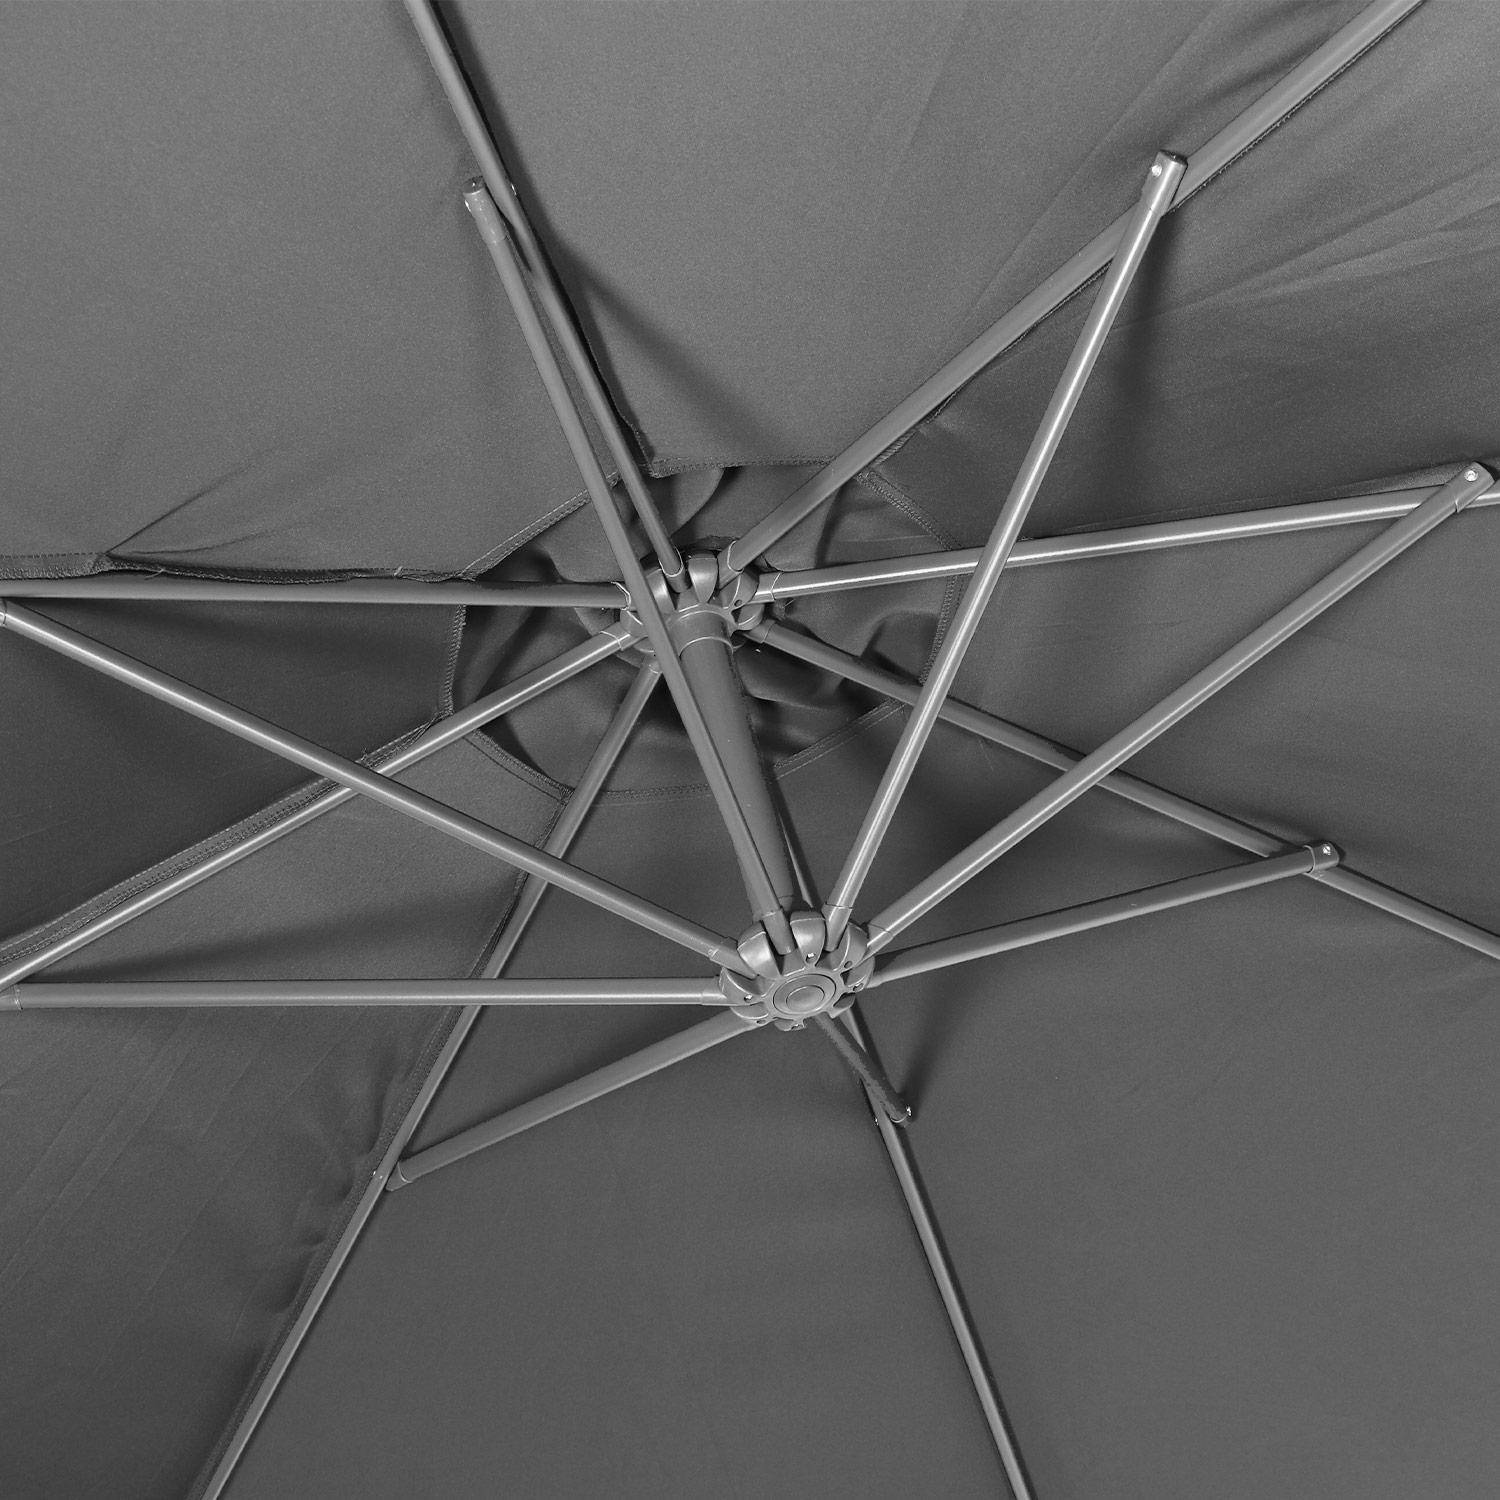 Ombrellone decentrato Ø300cm - Hardelot - Colore grigio, struttura antracite, maniglia a manovella senza ritorno. Photo5